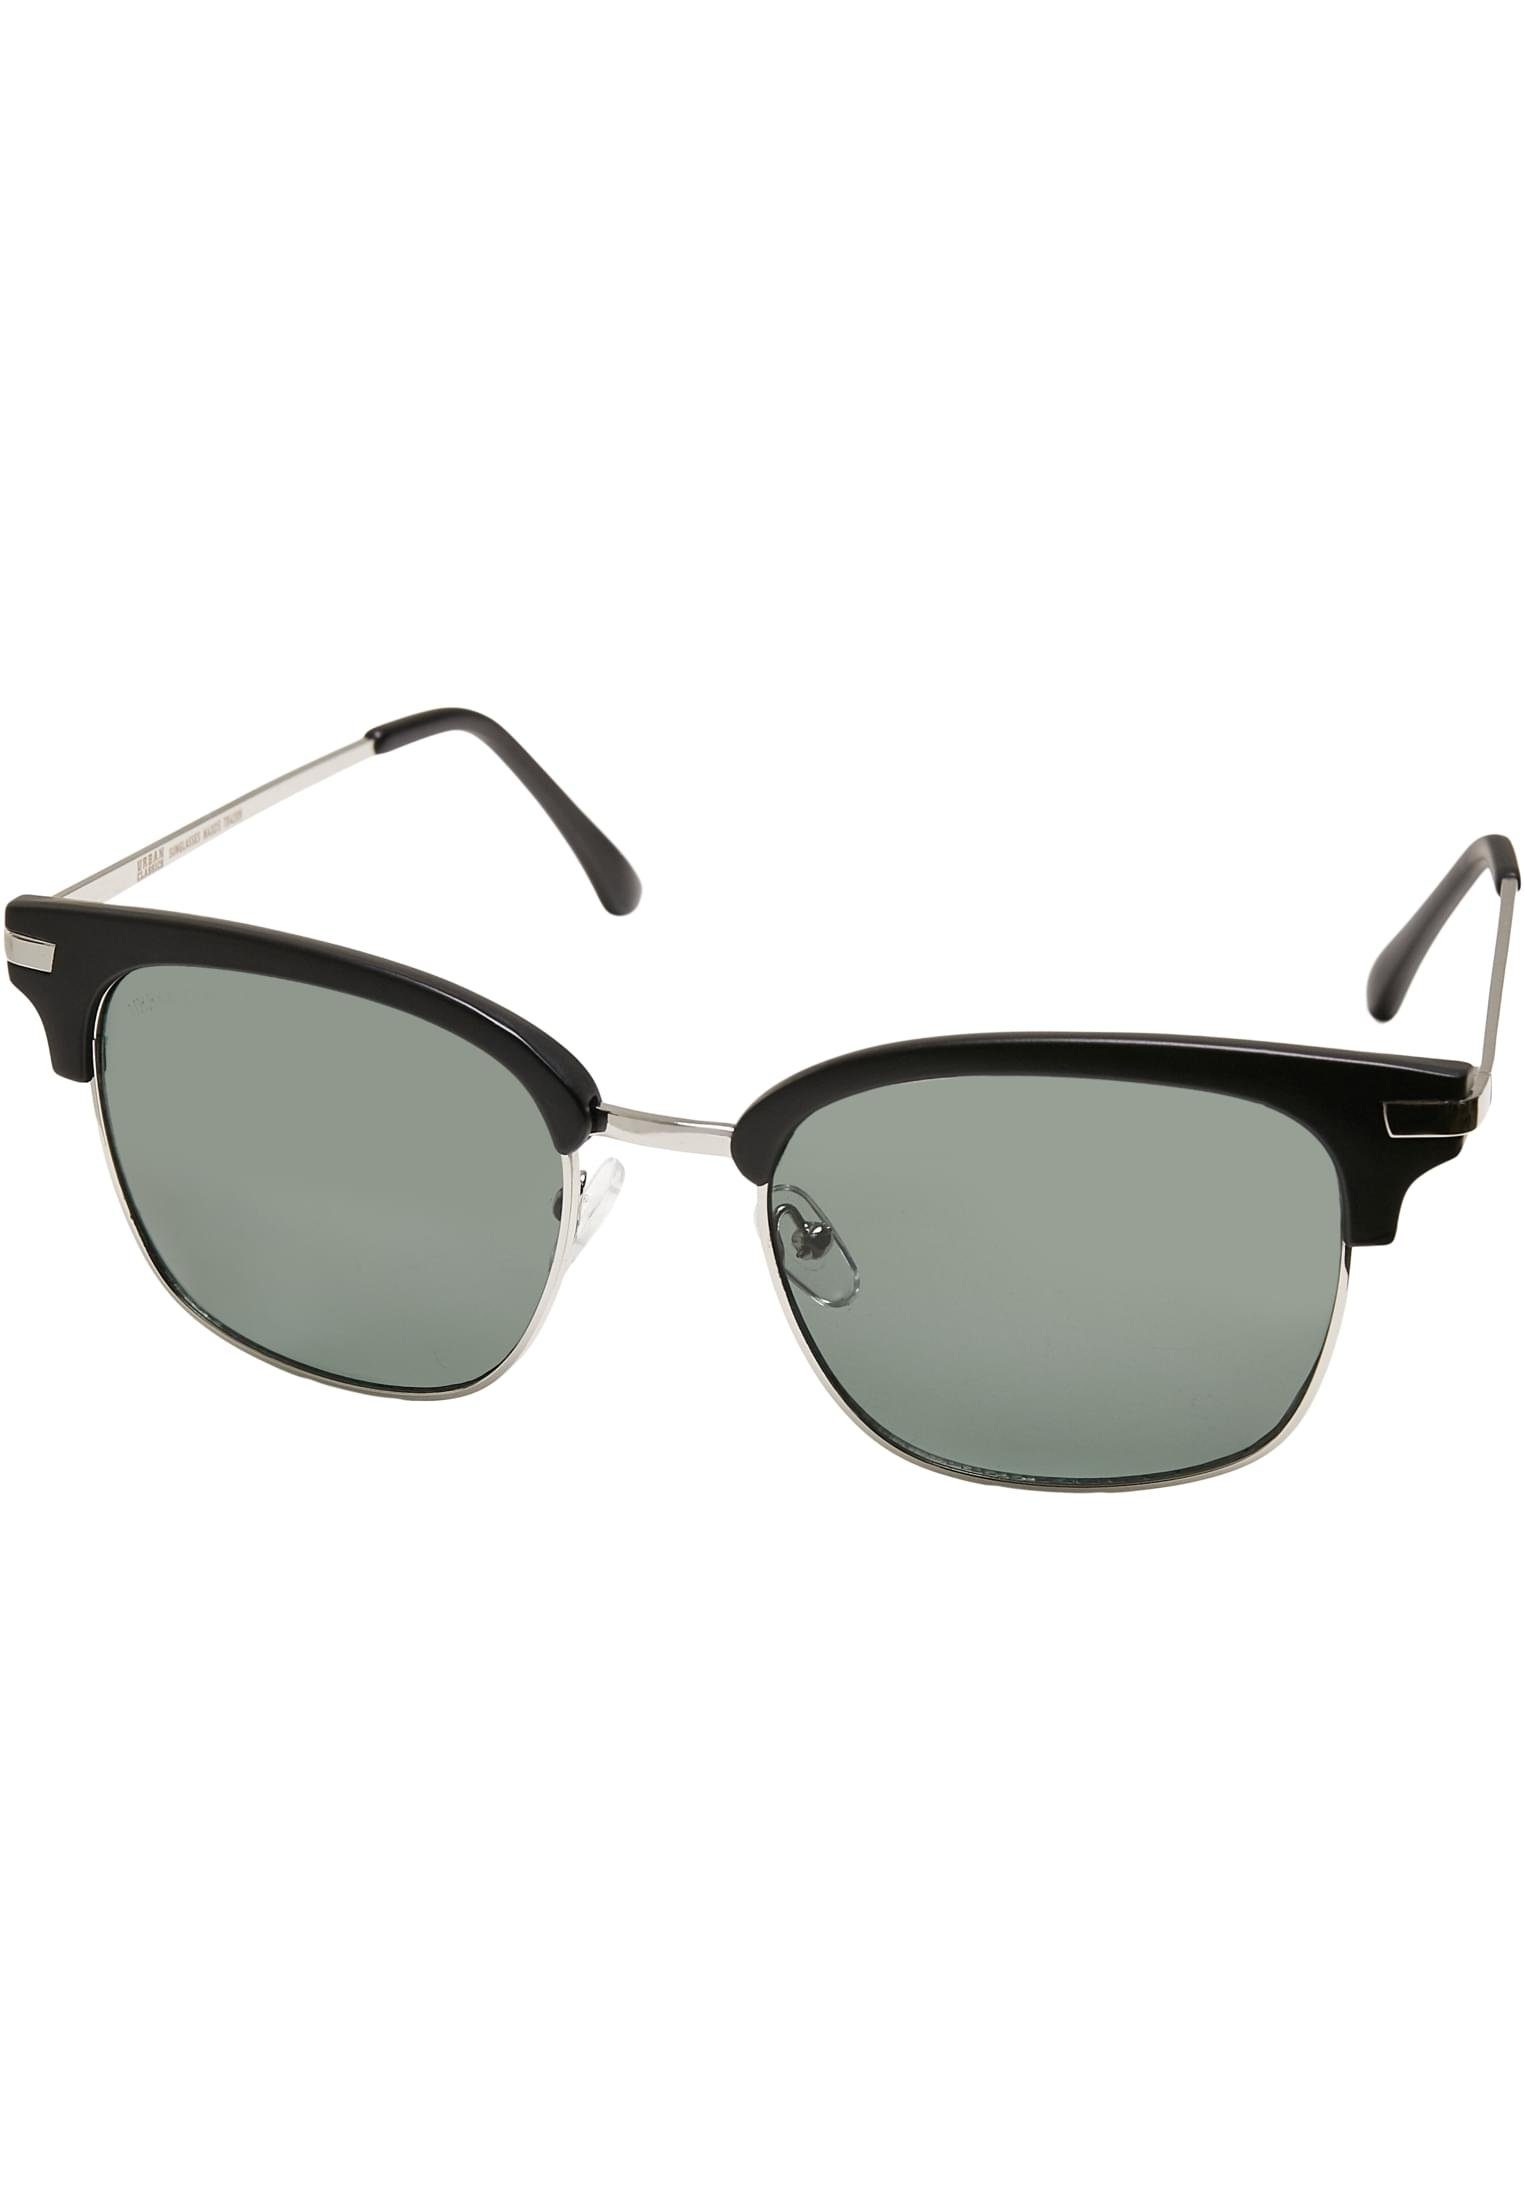 URBAN Sunglasses Crete Unisex Sonnenbrille CLASSICS